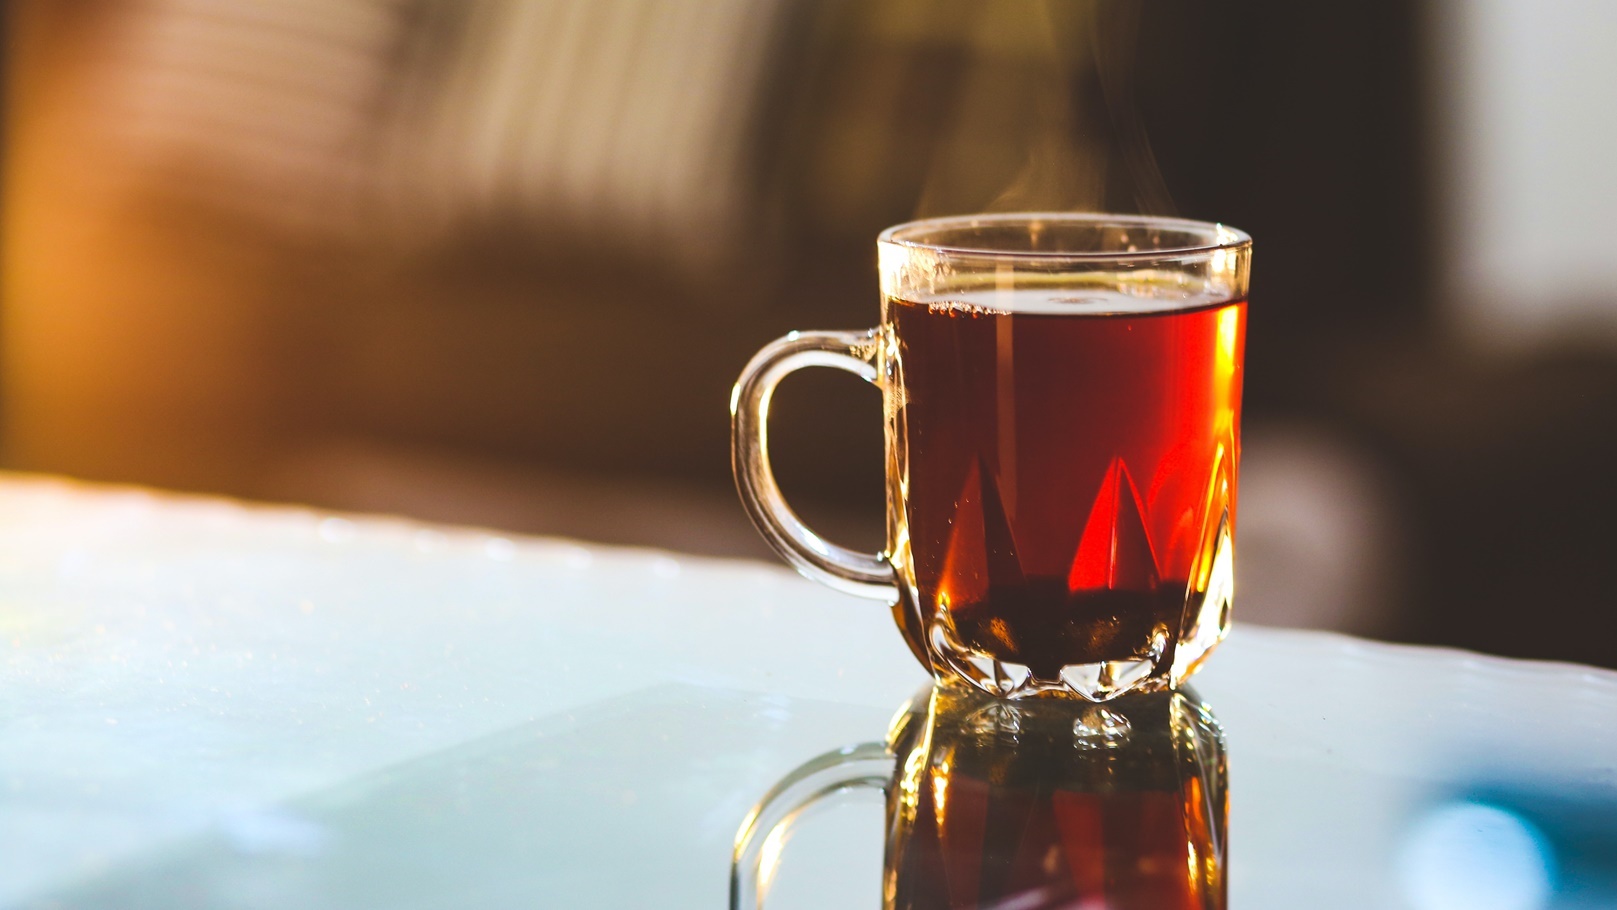 مقتل 9 أشخاص بسبب كوب شاي في الهند 